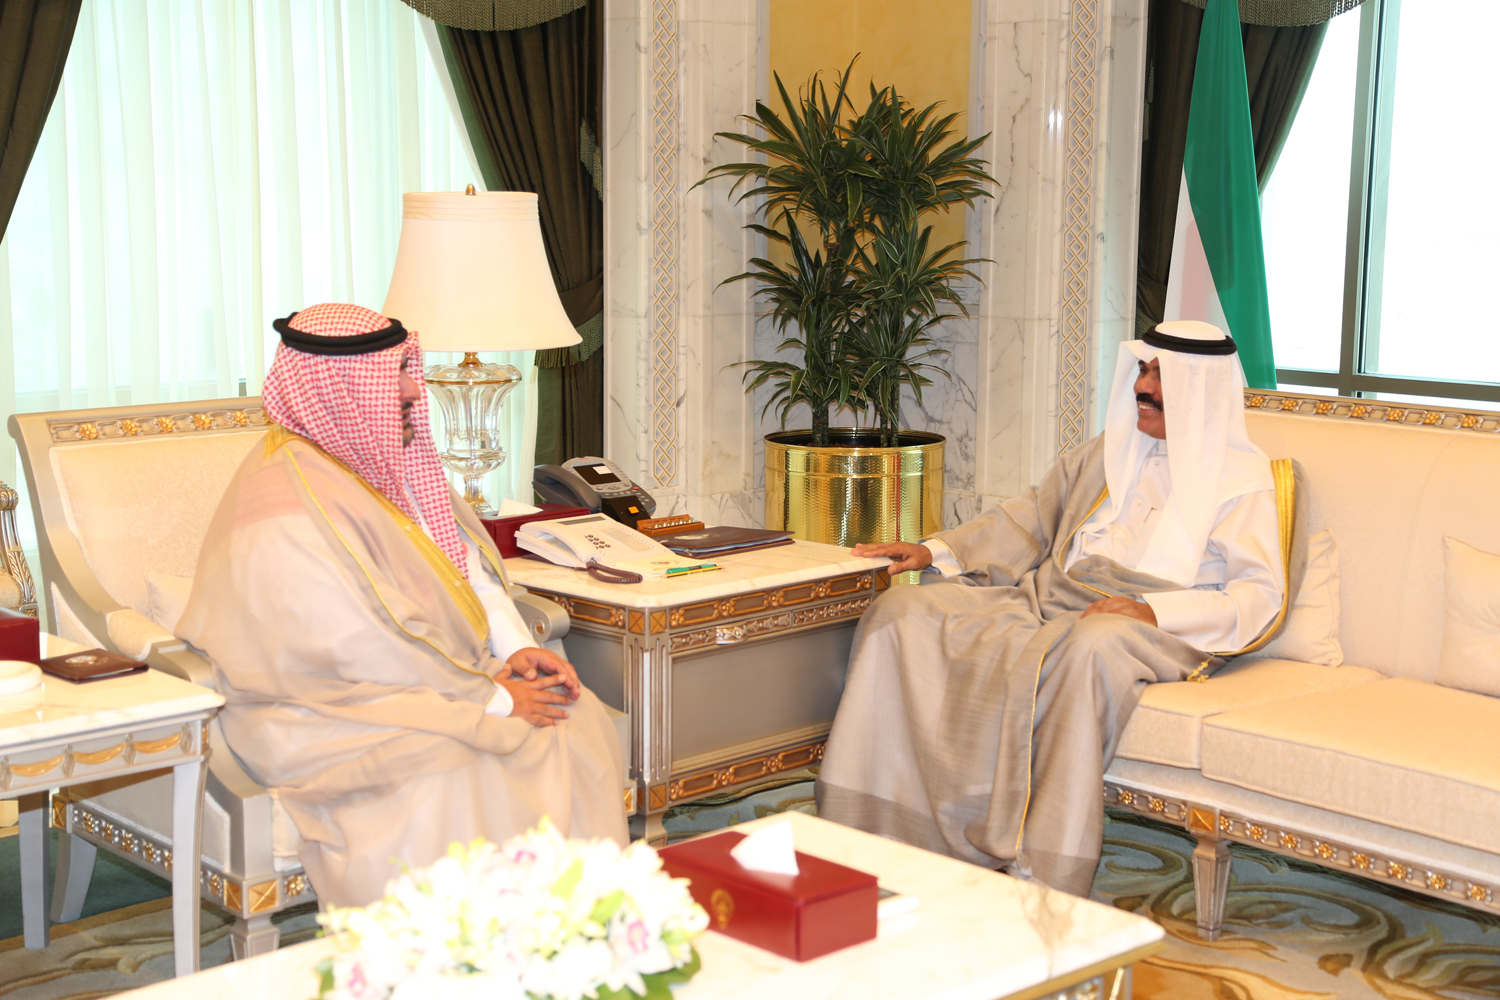 His Highness the Crown Prince Sheikh Nawaf Al-Ahmad Al-Jaber Al-Sabah receives Chief of National Security Apparatus Thamer Ali Sabah Al-Salem Al-Sabah